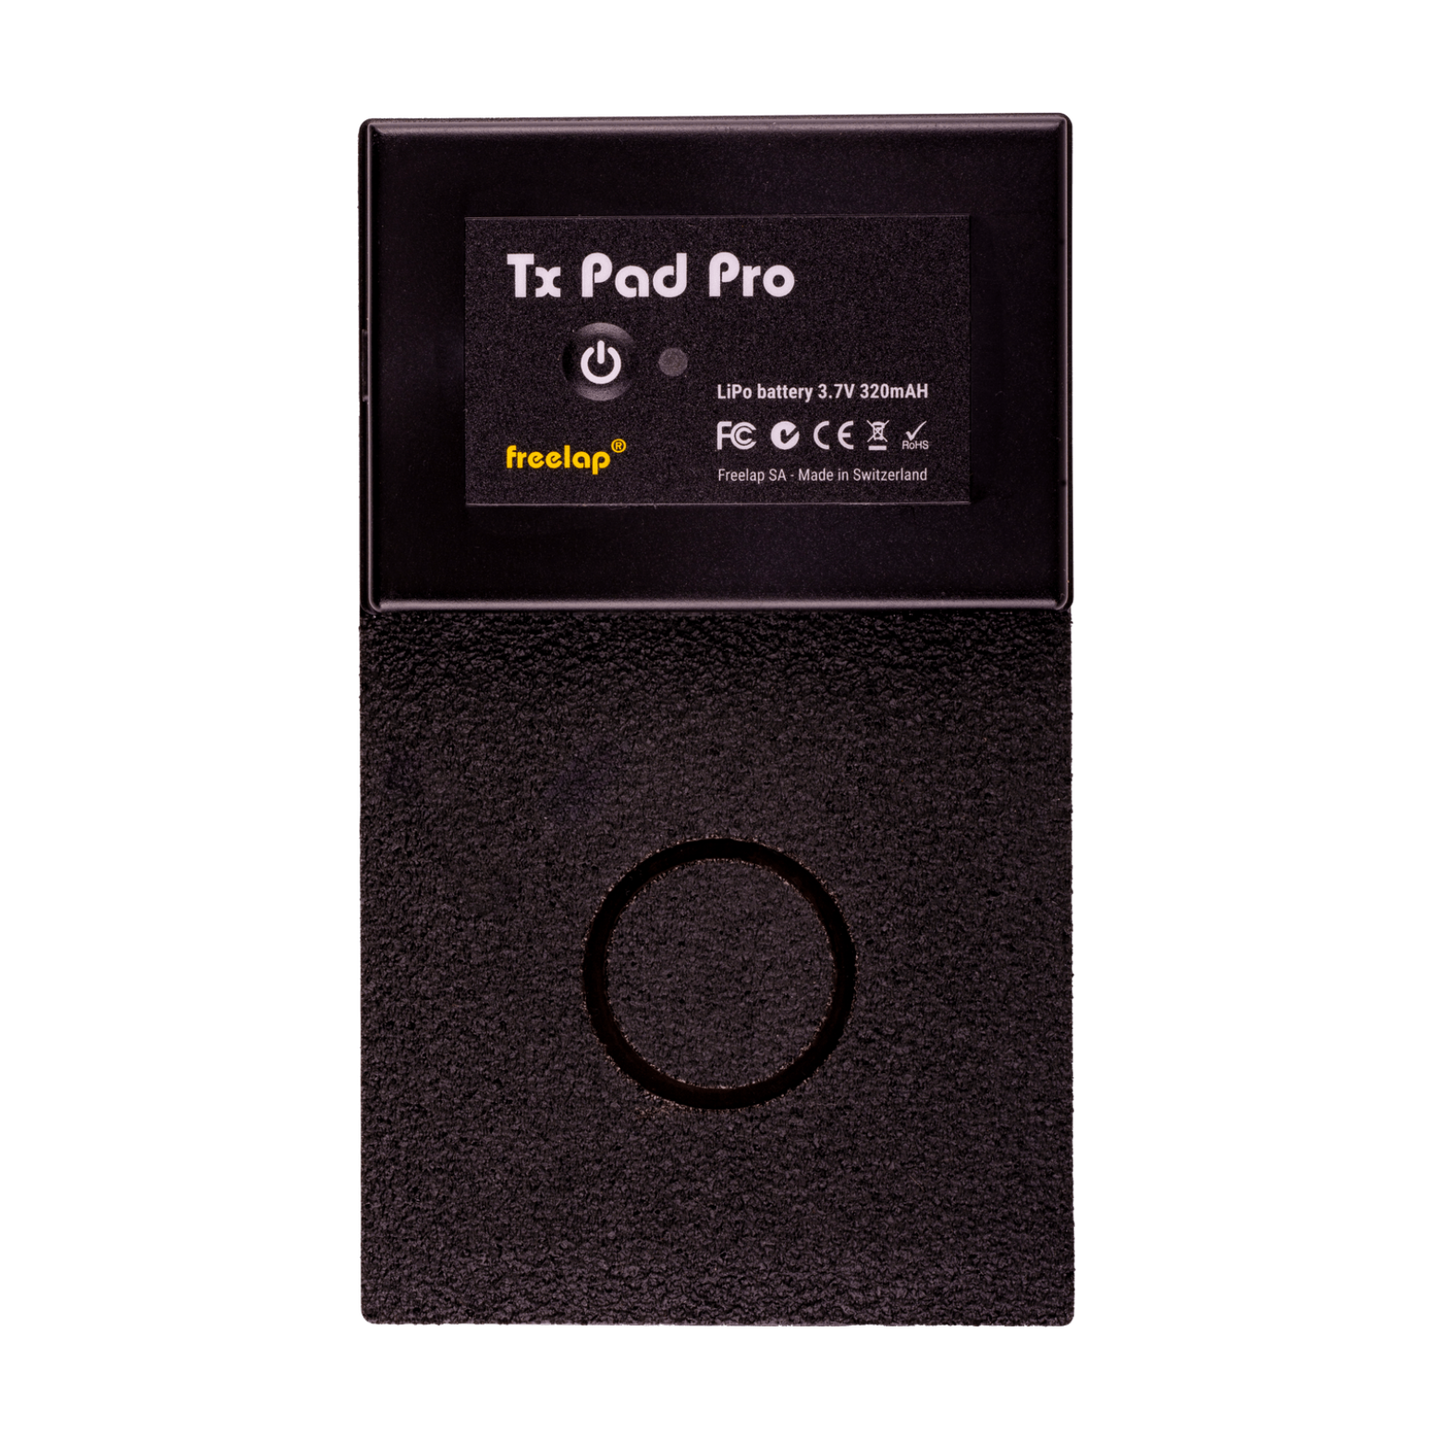 Tx Pad Pro